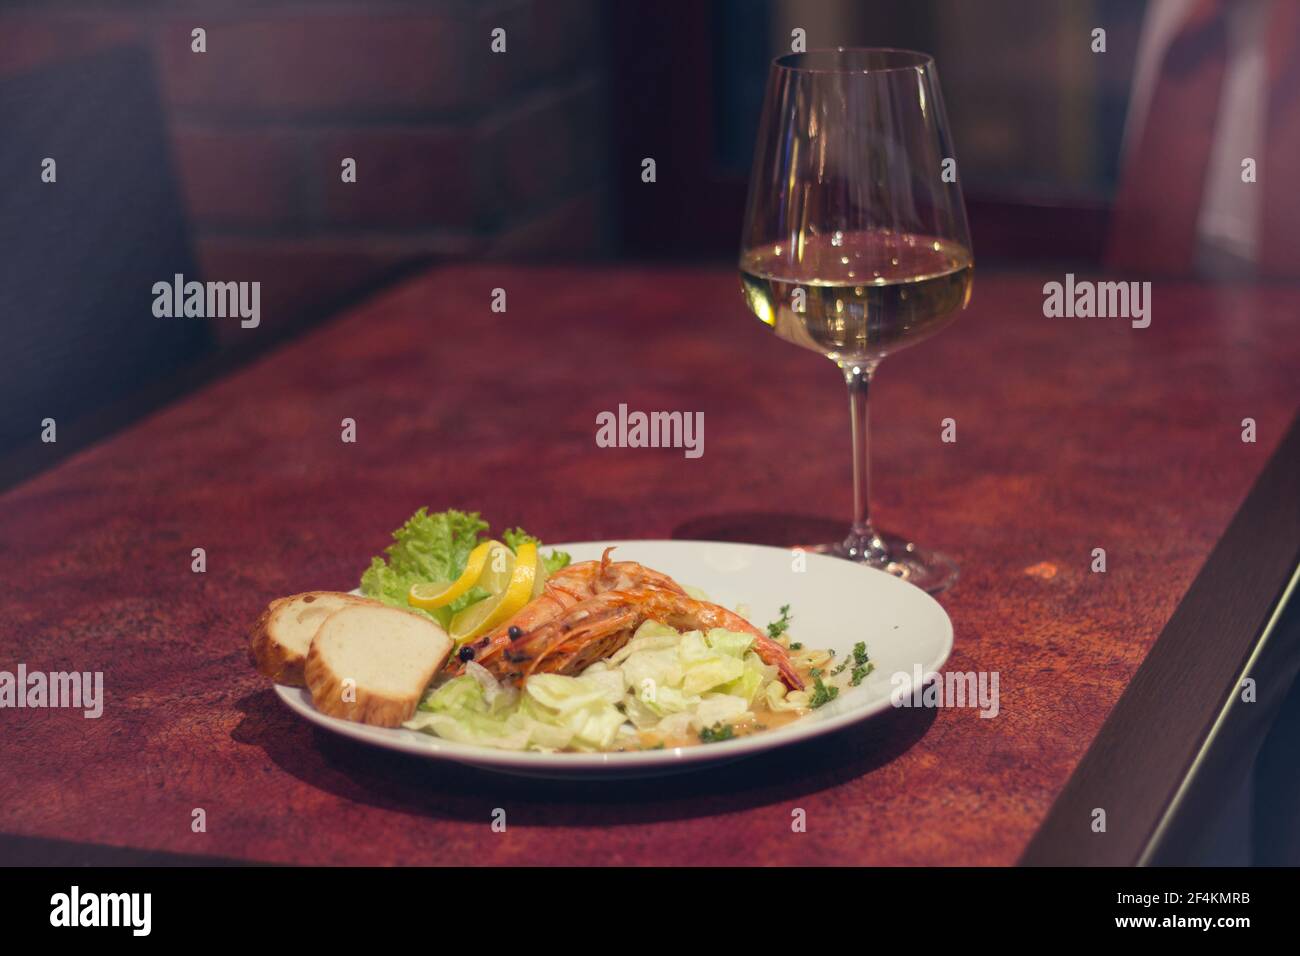 Cibo del ristorante con ingredienti freschi - gamberi giganti con freschi insalata e bicchiere di vino bianco Foto Stock